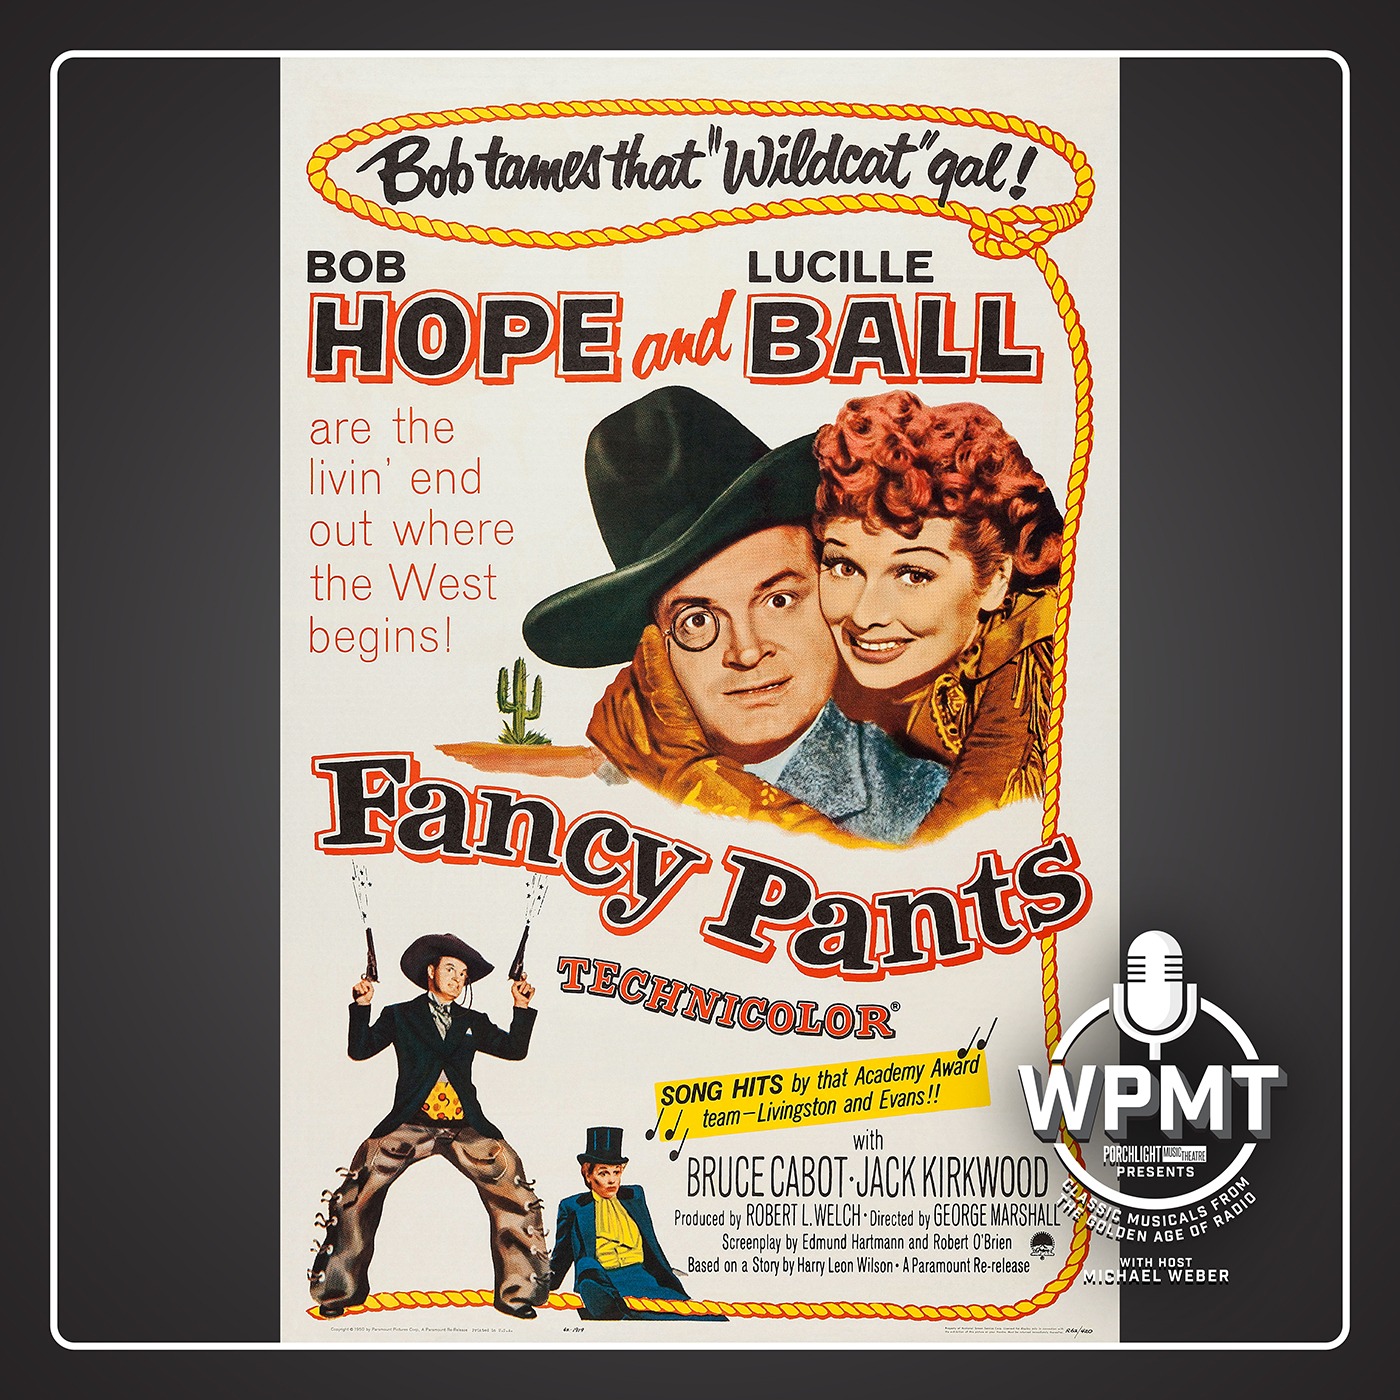 WPMT #31: Fancy Pants